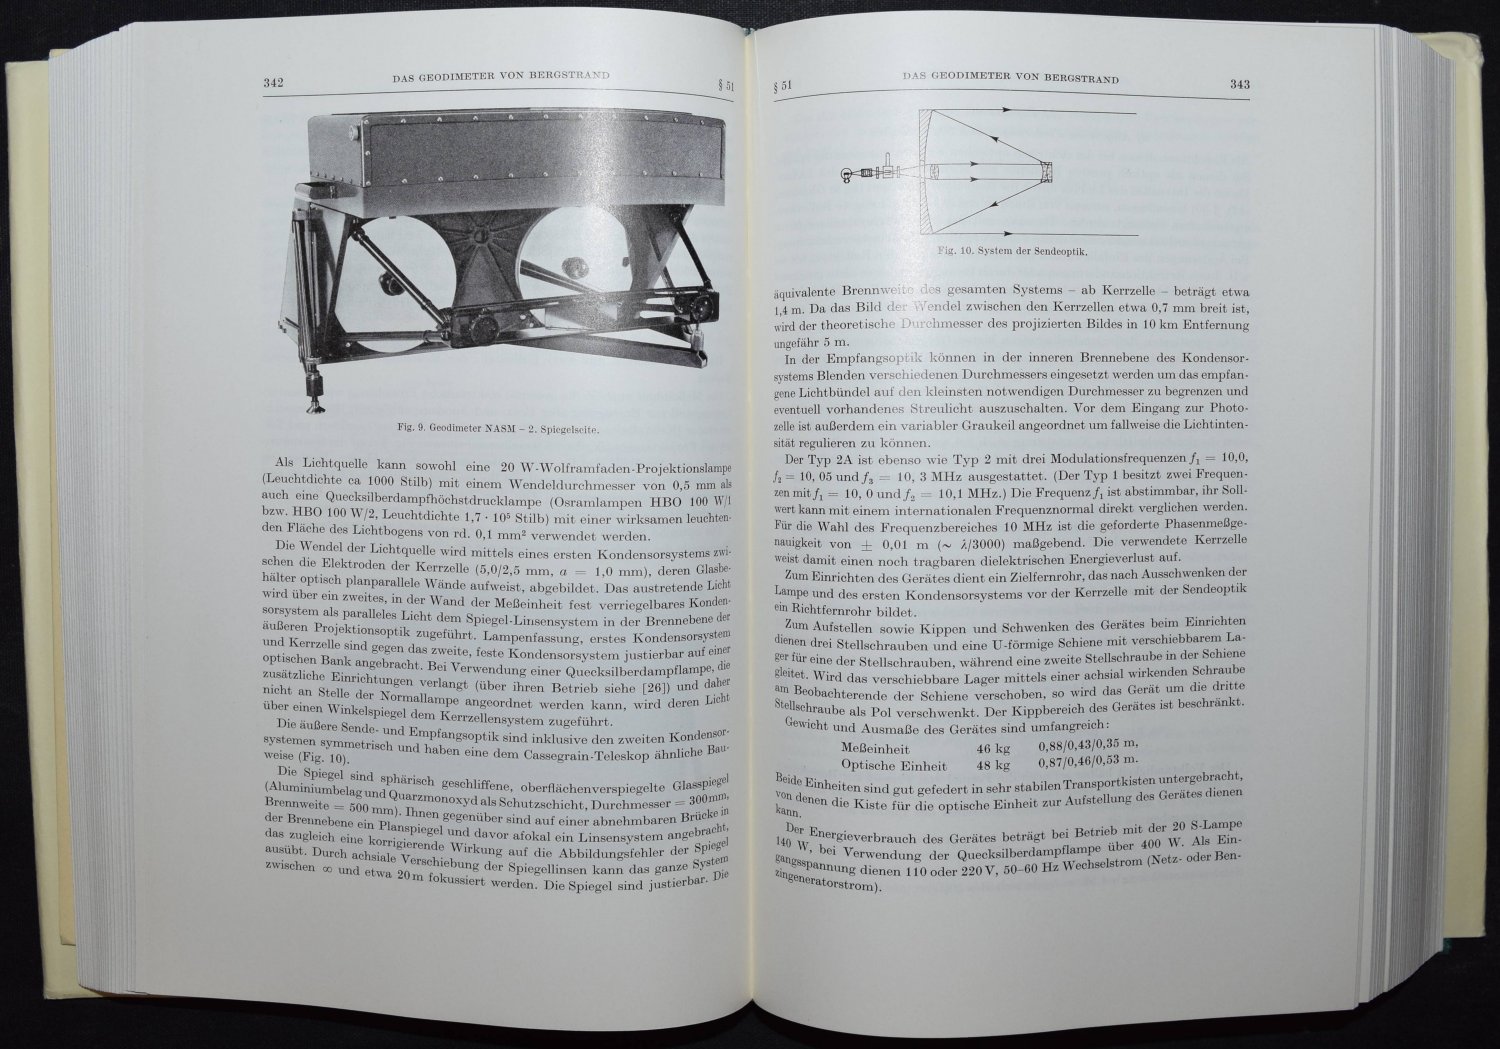 https://images.booklooker.de/x/01HejD/Wilhelm-Jordan+Handbuch-der-Vermessungskunde-Band-VI-K-Rinner-u-F-Benz-Die-Entfernungsmessung-mit.jpg